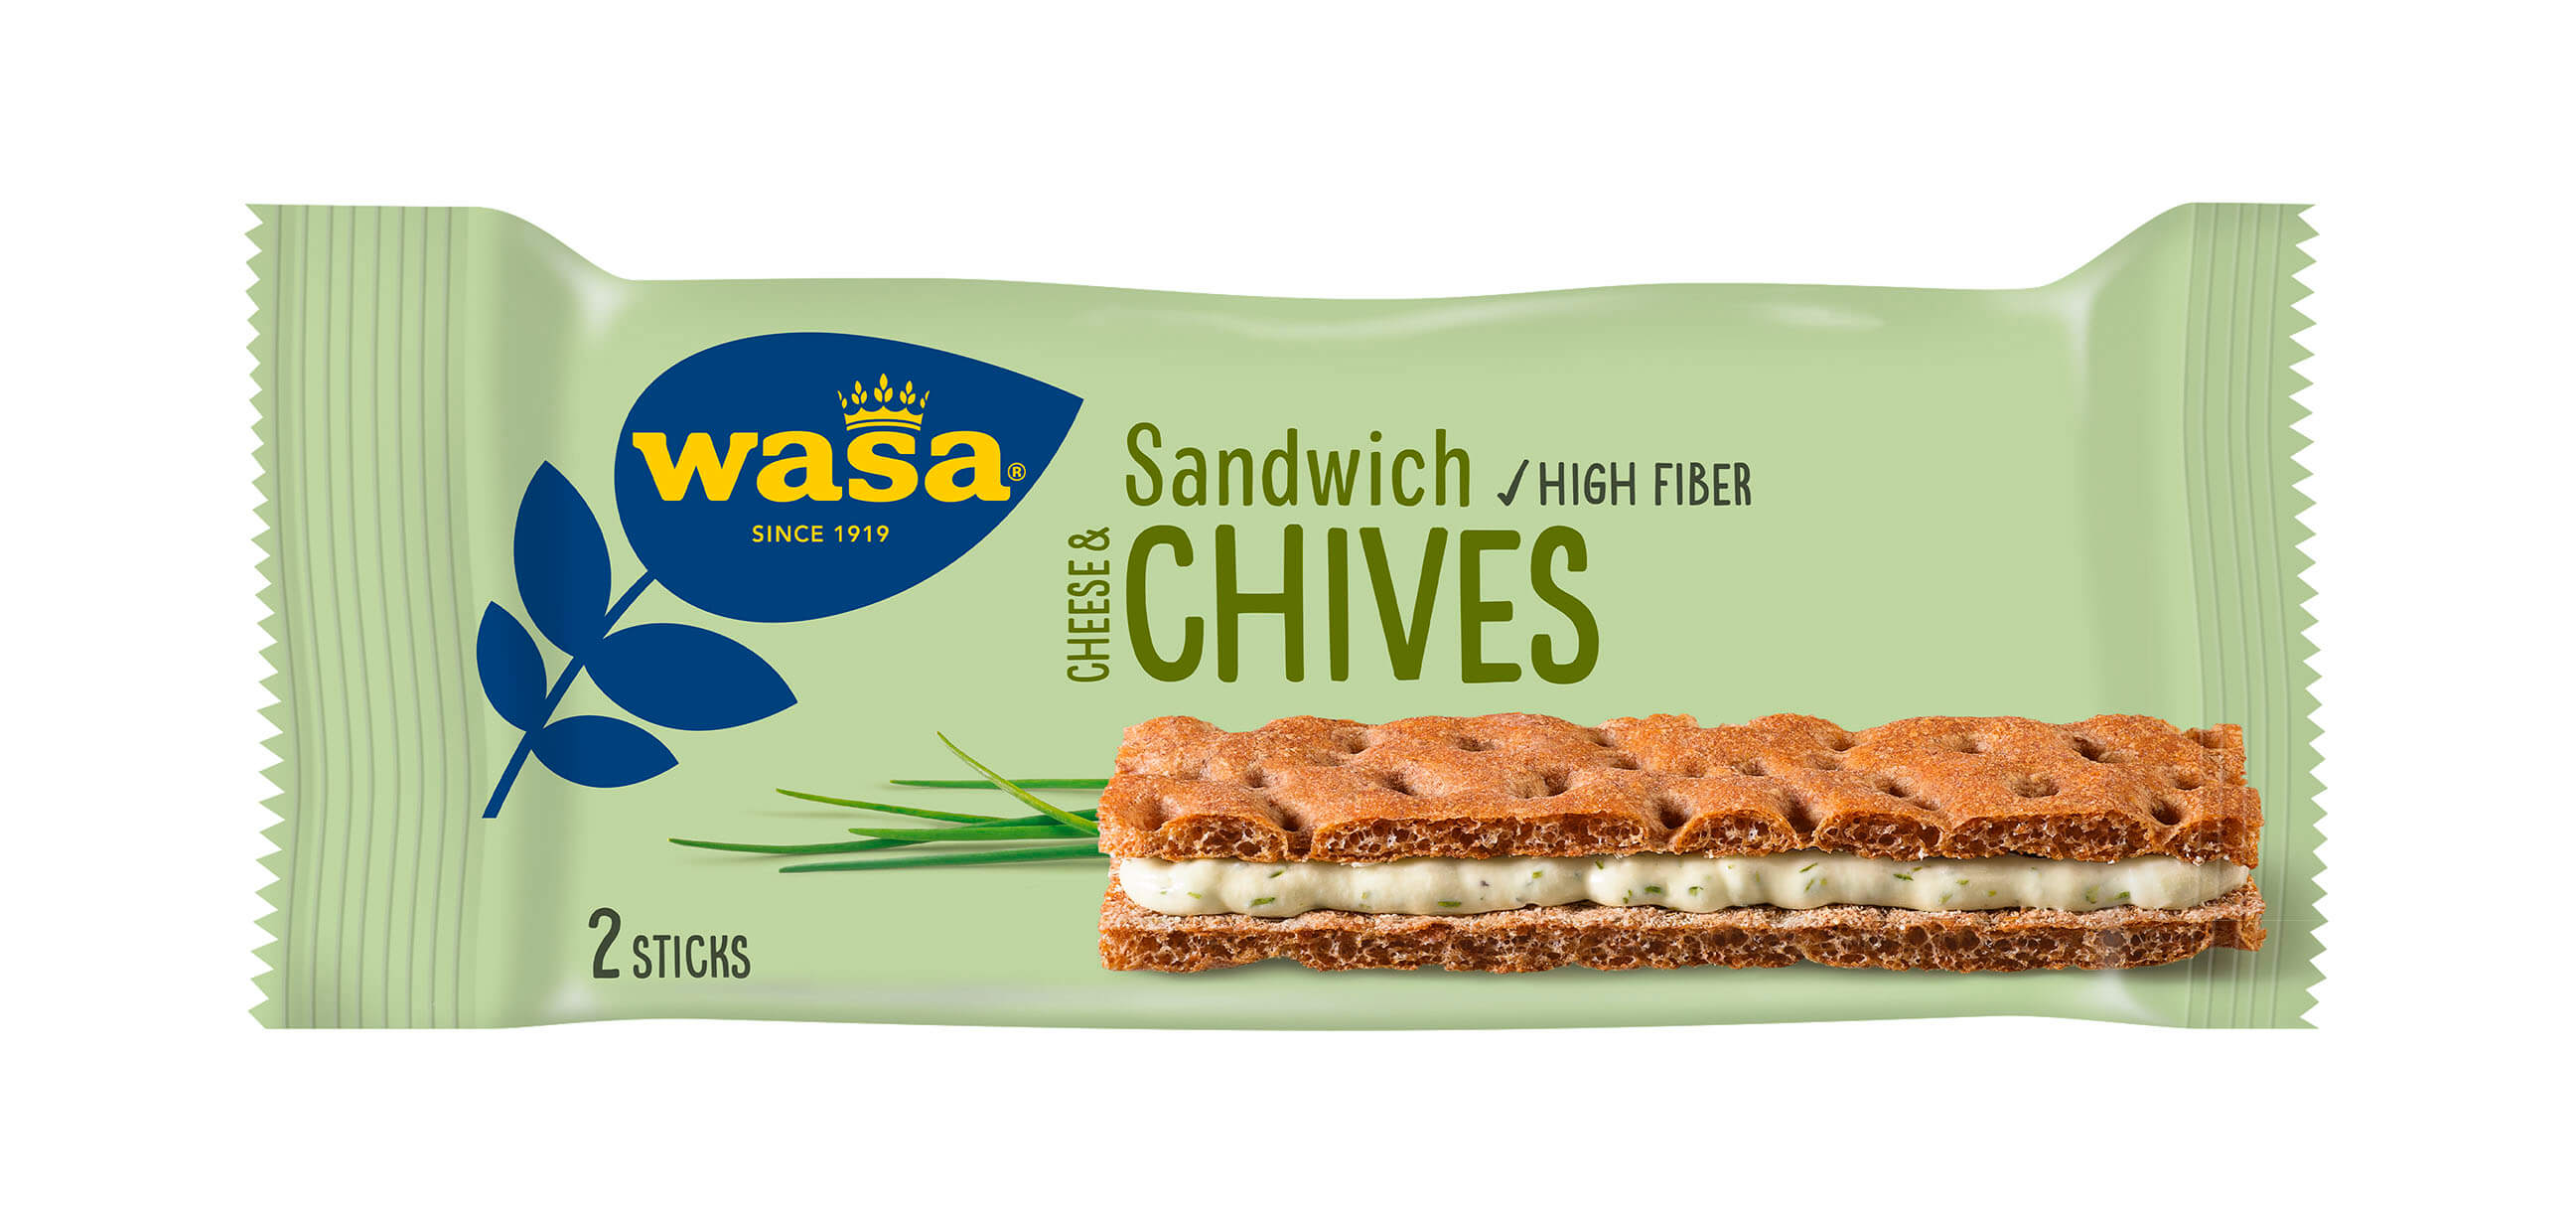 Wasa Sandwich Cheese & Chives - Upptäck det perfekta mellanmålet, knäckebröd med krämig ostfyllning. Utmärkt som enkelt mellanmål när du är på språng och som goda mellanmål efter skolan eller innan träning.